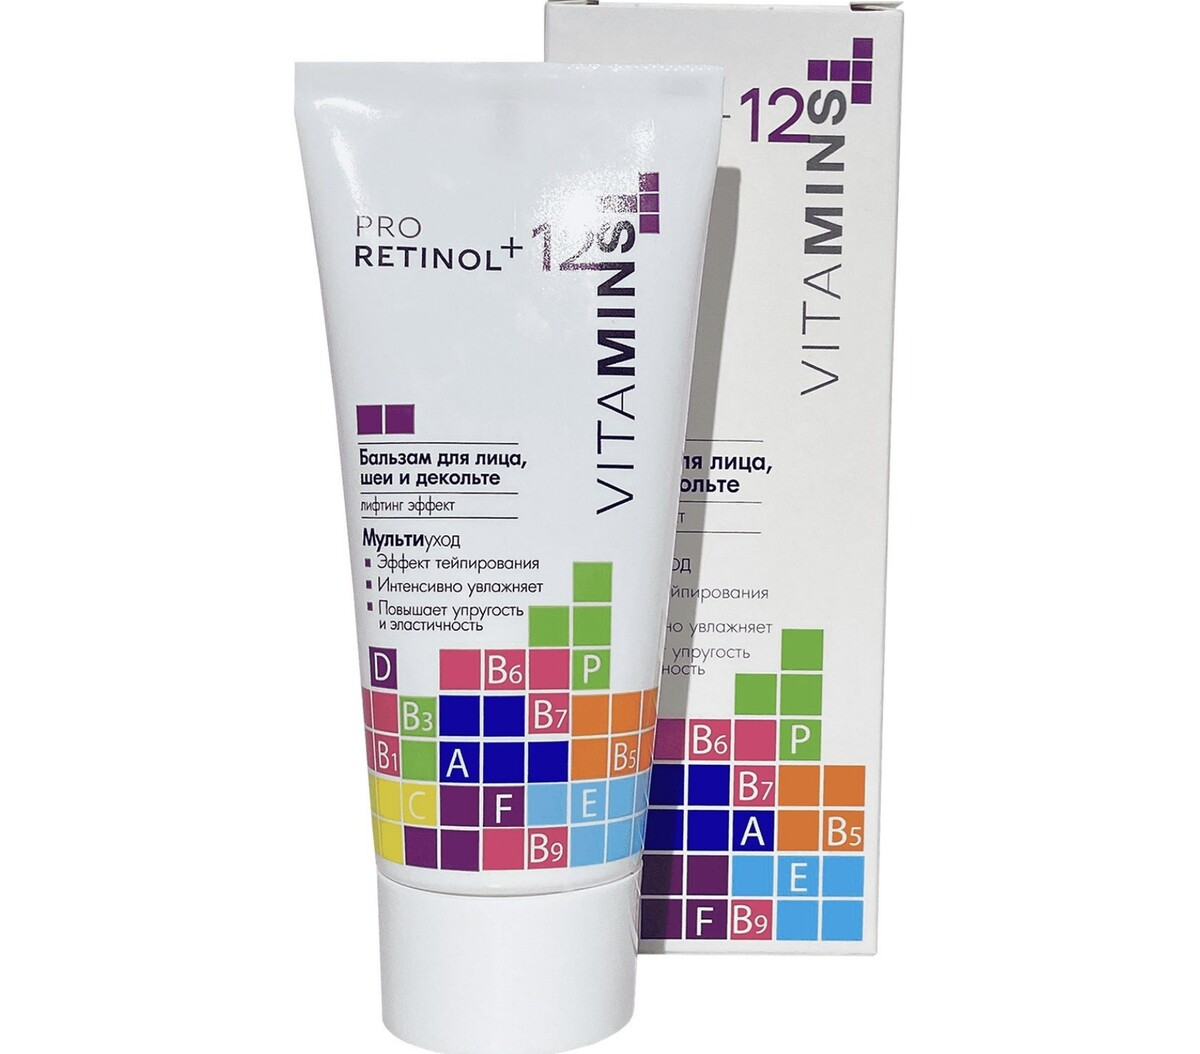 Pro retinol + 12 vitamins бальзам для лица, шеи и декольте, 50г тоник для лица шеи и декольте натуральное увлажнение 95мл